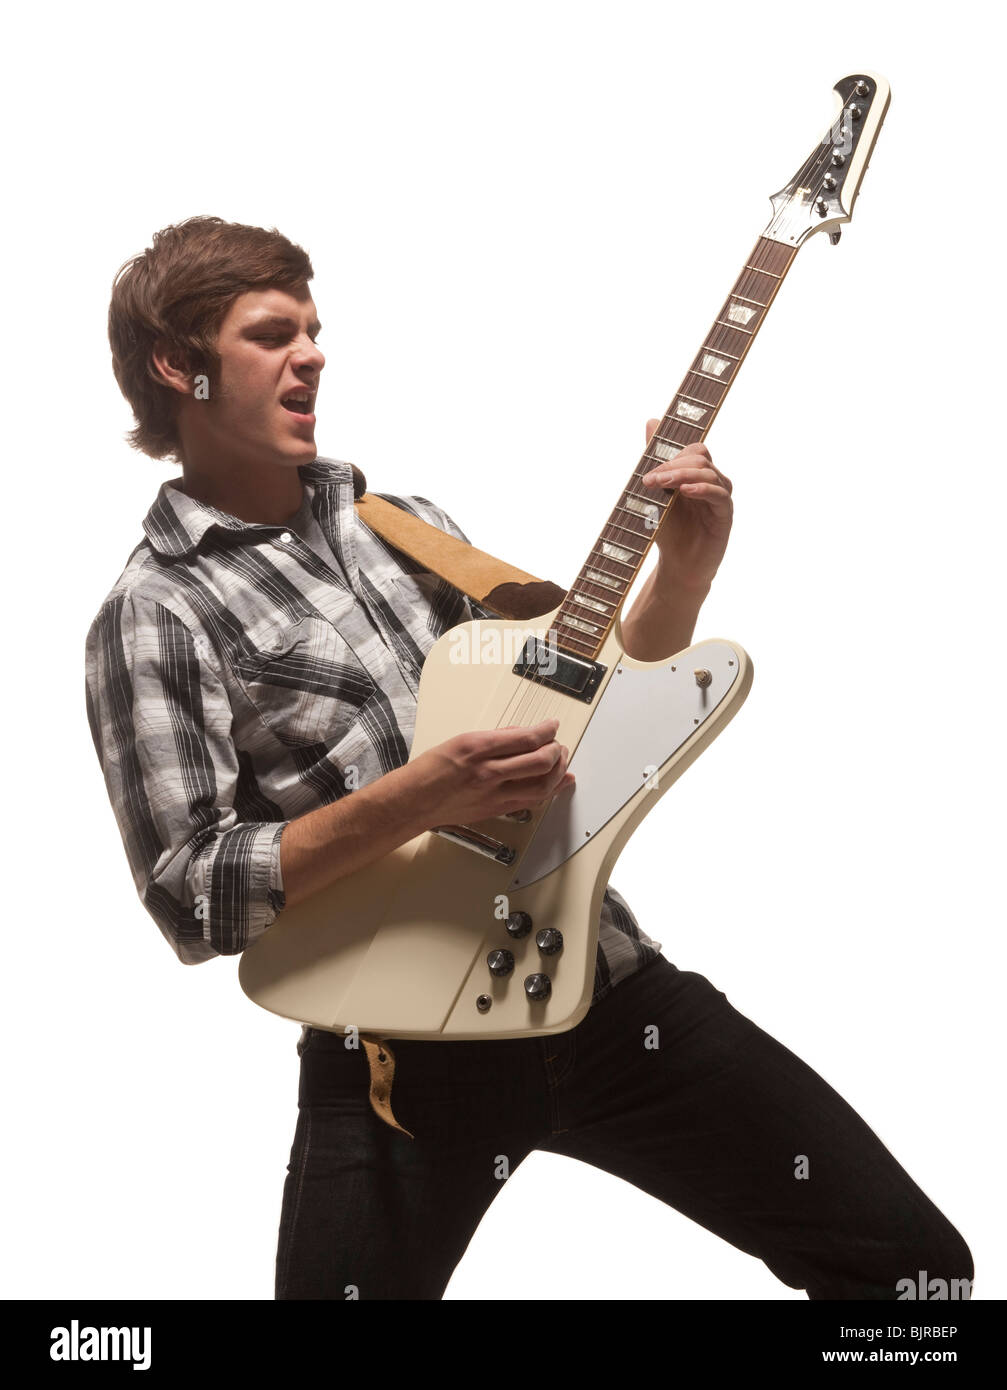 Jeune homme jouant de la guitare, studio shot Banque D'Images